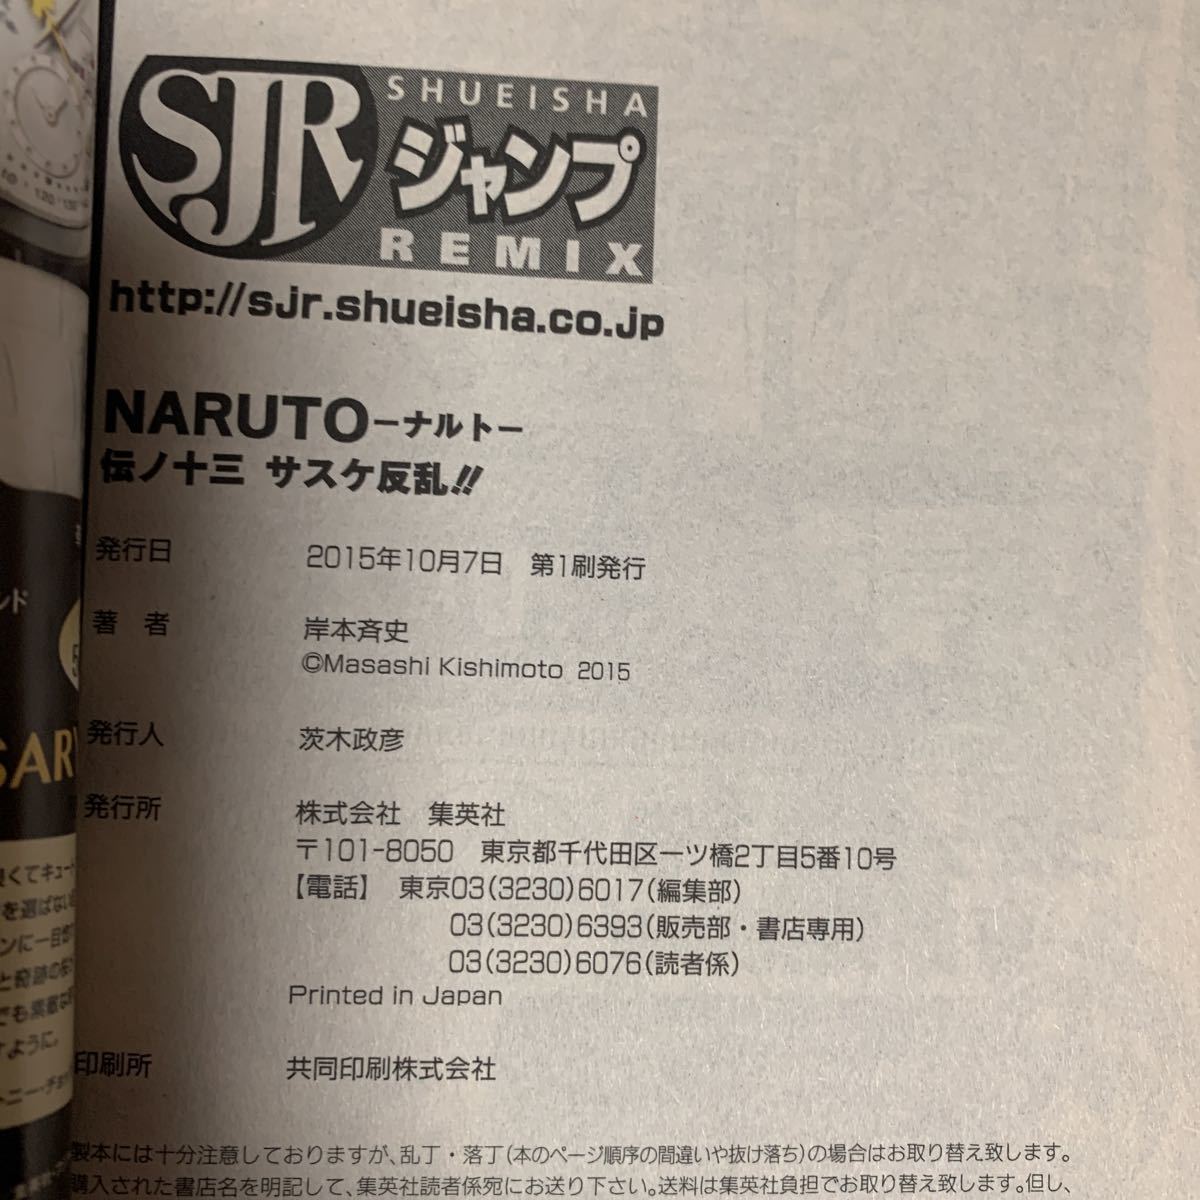 NARUTO Shueisha новый времена начало Project 13.книга@. история 2015 год выпуск Jump remix 